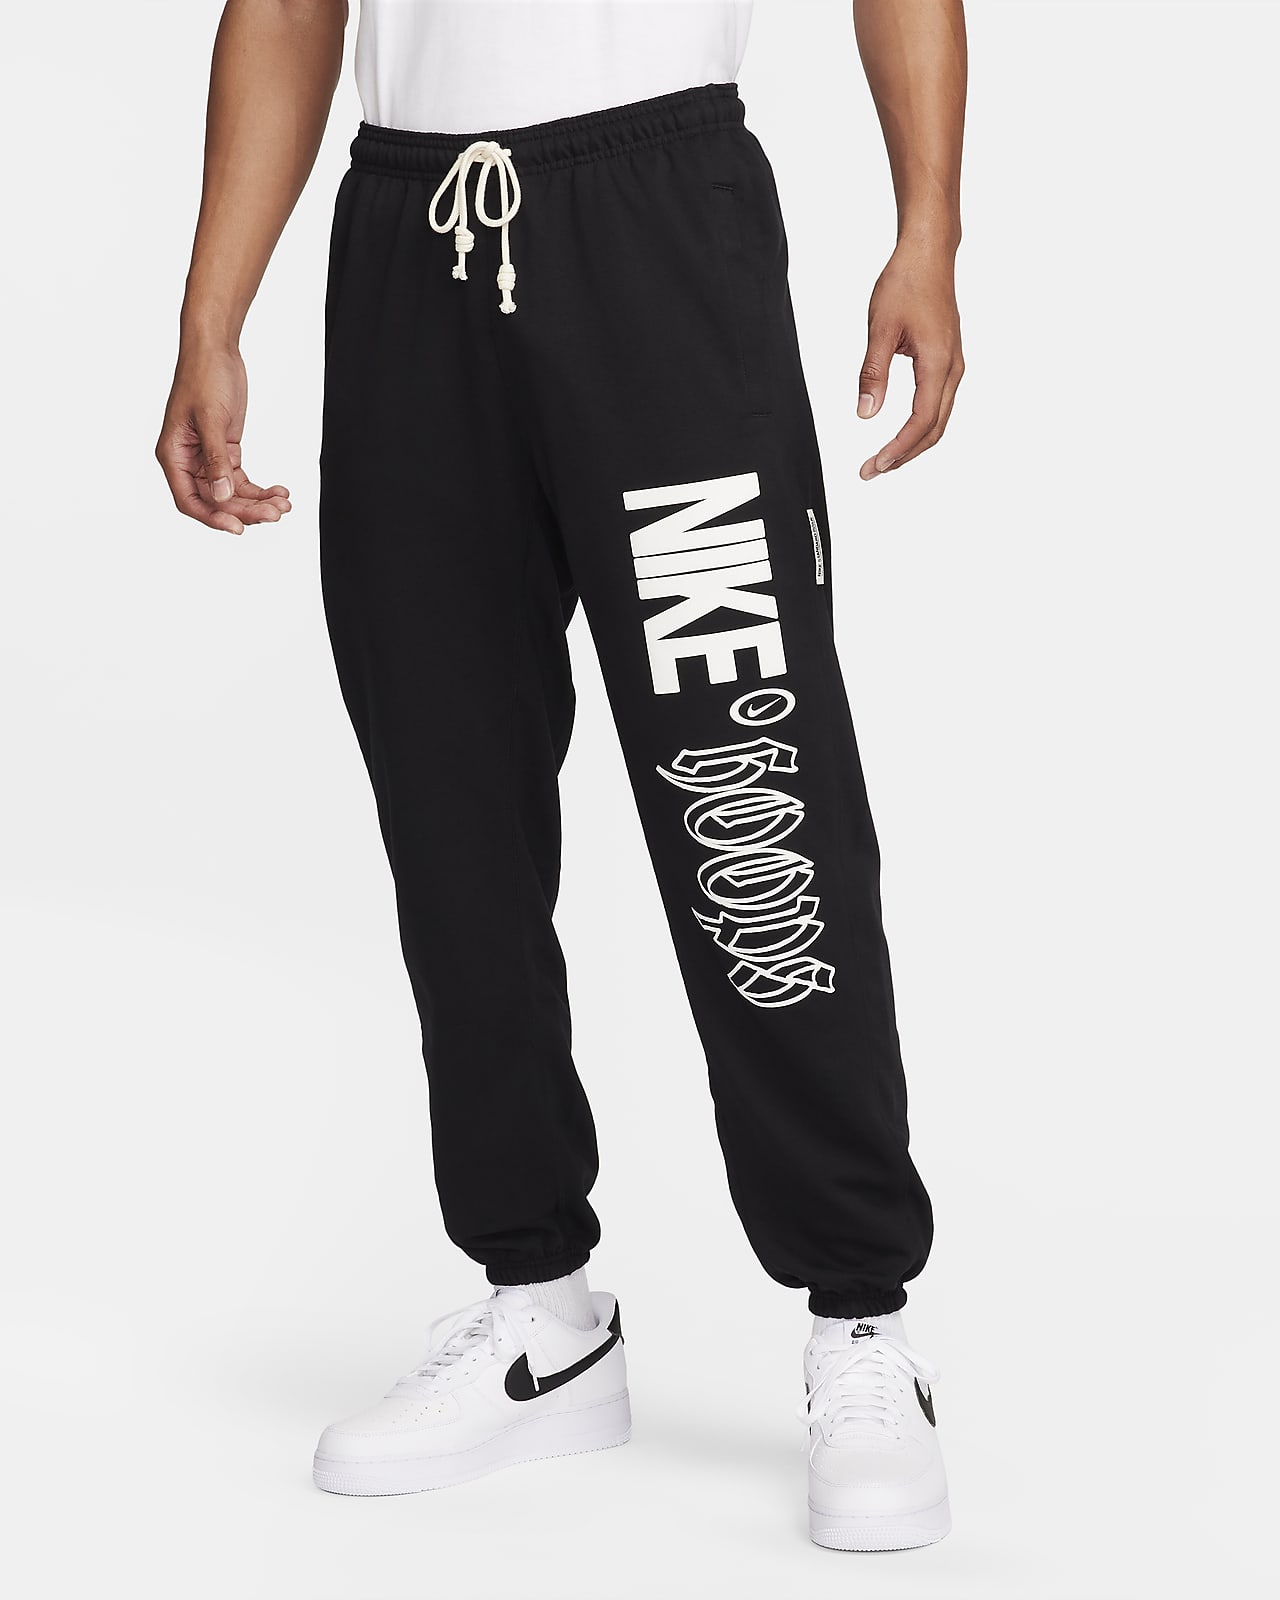 Pants de básquetbol Dri-FIT para hombre Nike Standard Issue